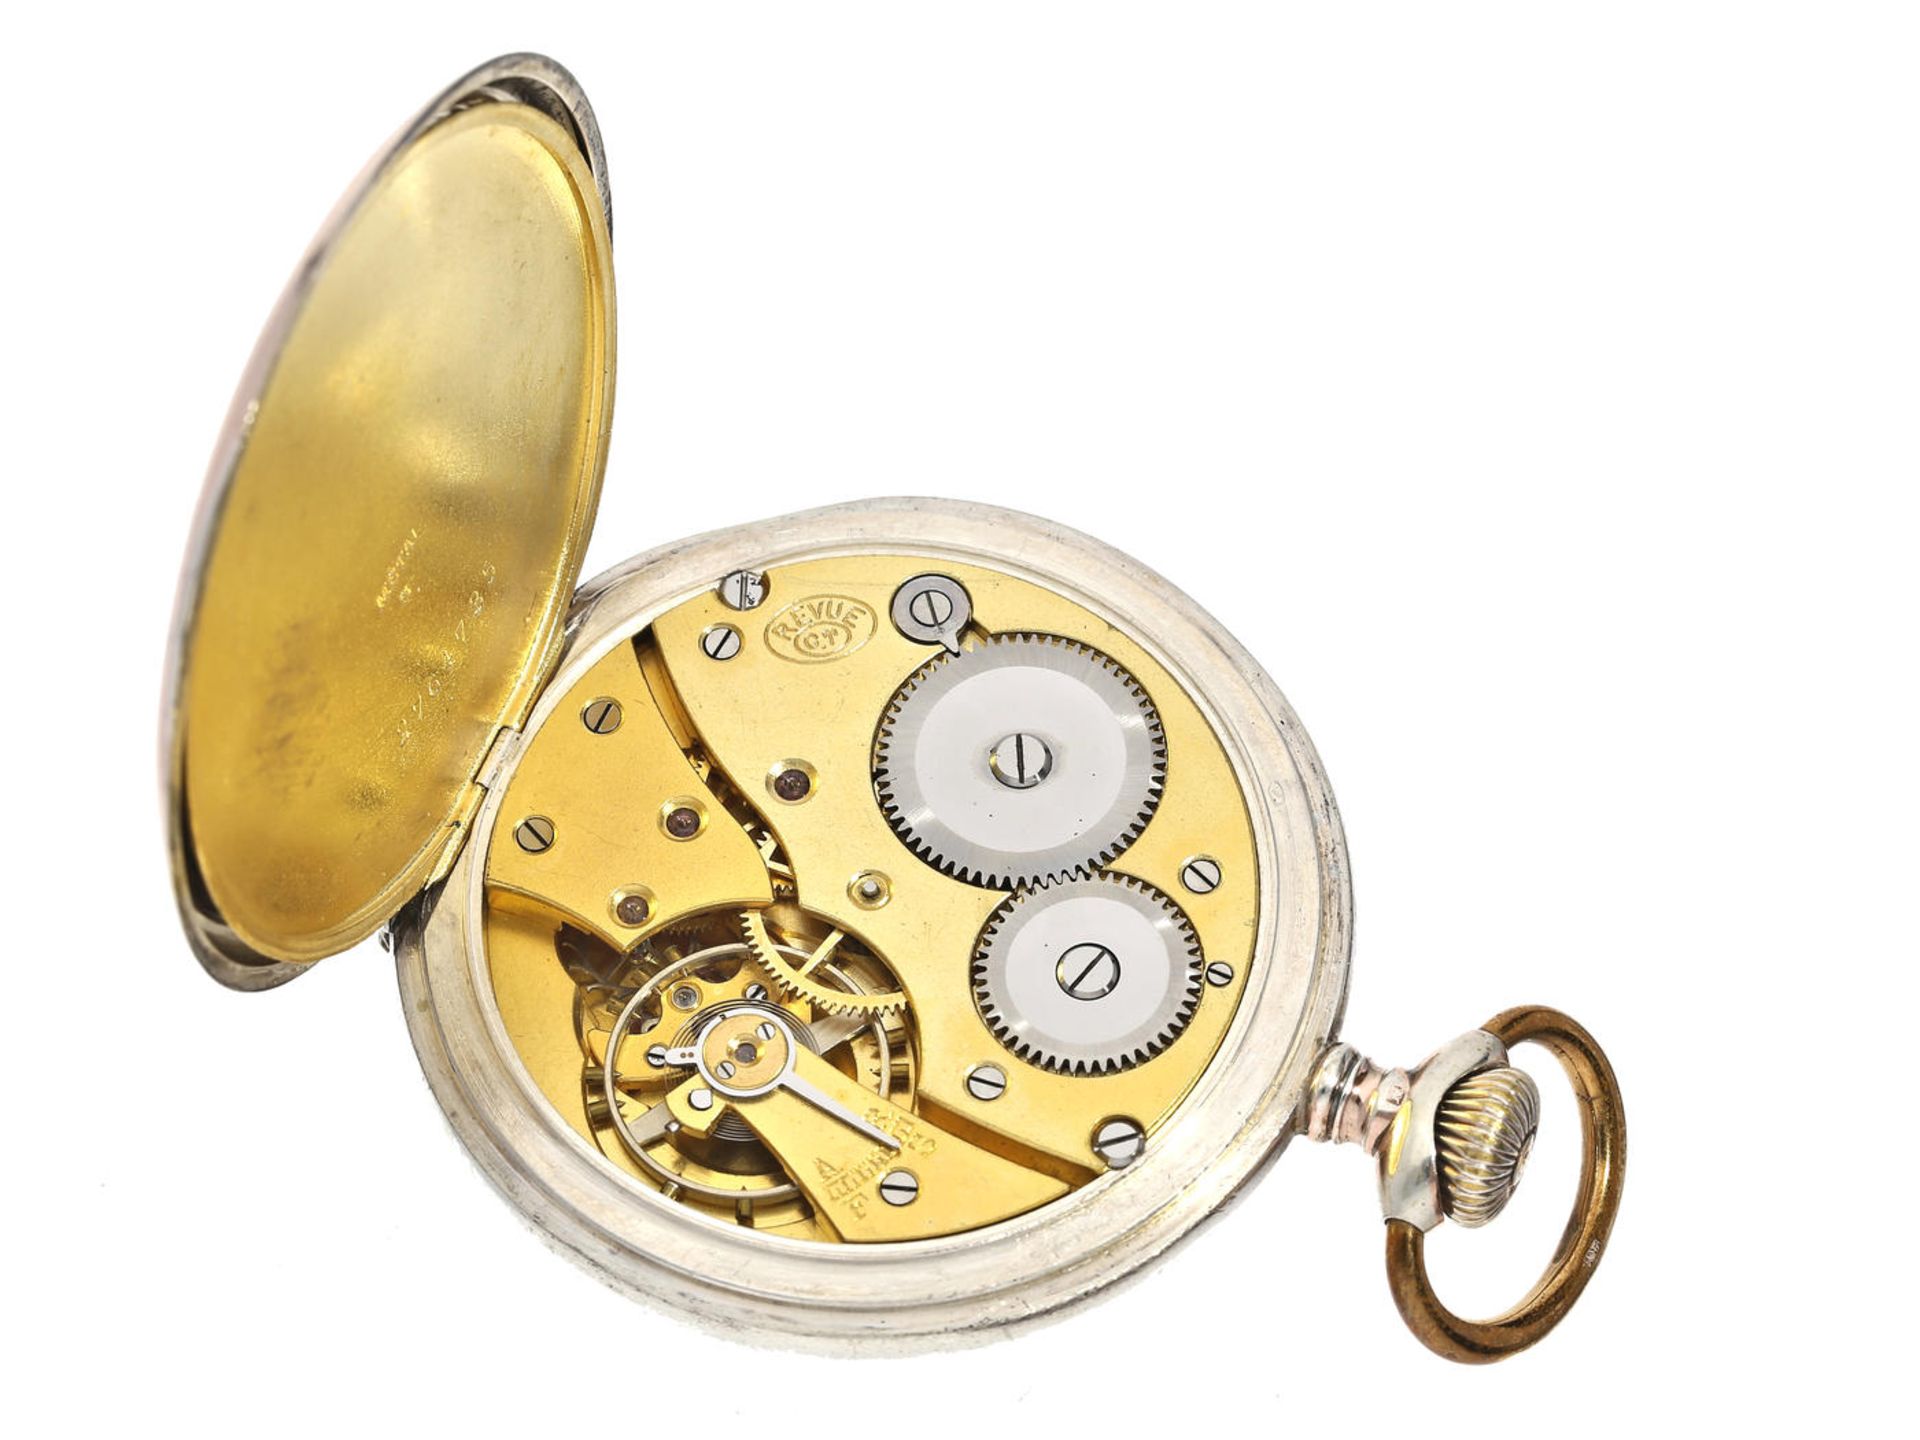 Taschenuhr: attraktive Taschenuhr mit Reliefgehäuse und Verkäufer-Signatur Johann Reckeweg, Achim - Bild 2 aus 3